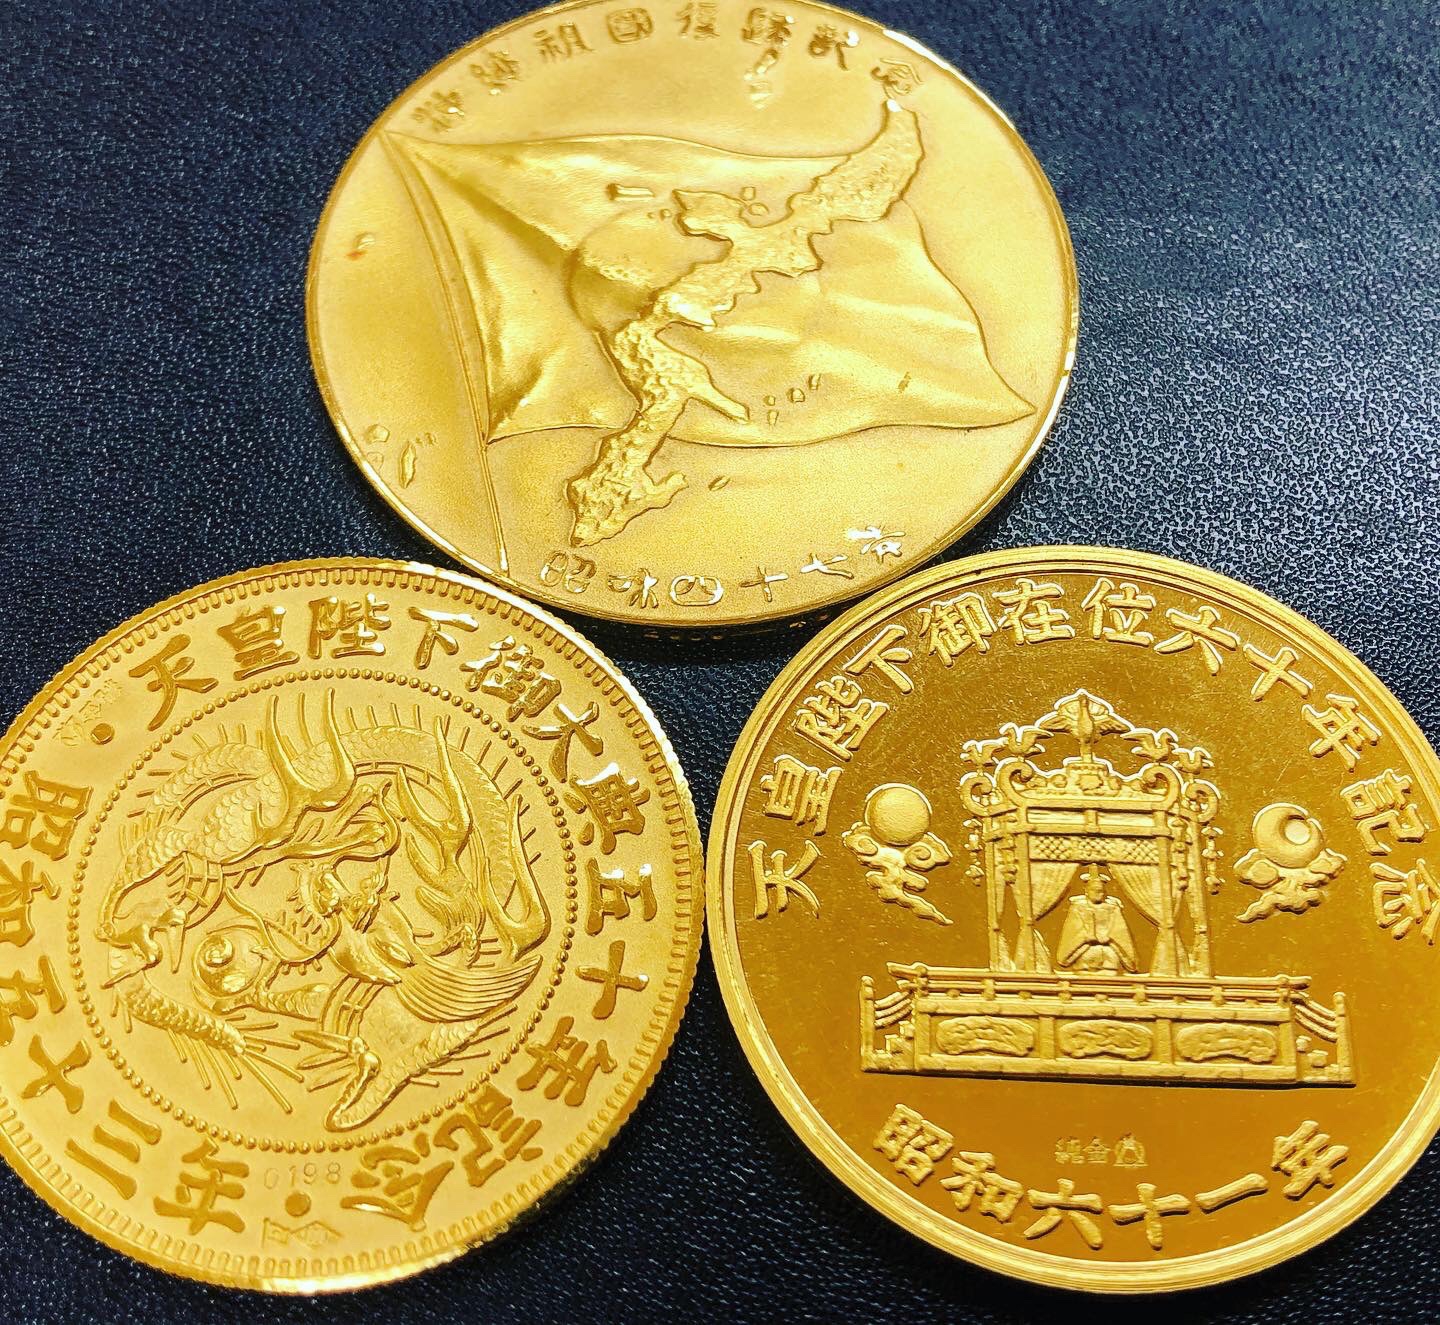 松本徽章製 天皇陛下御大典記念、御在位記念などの記念メダルを3点